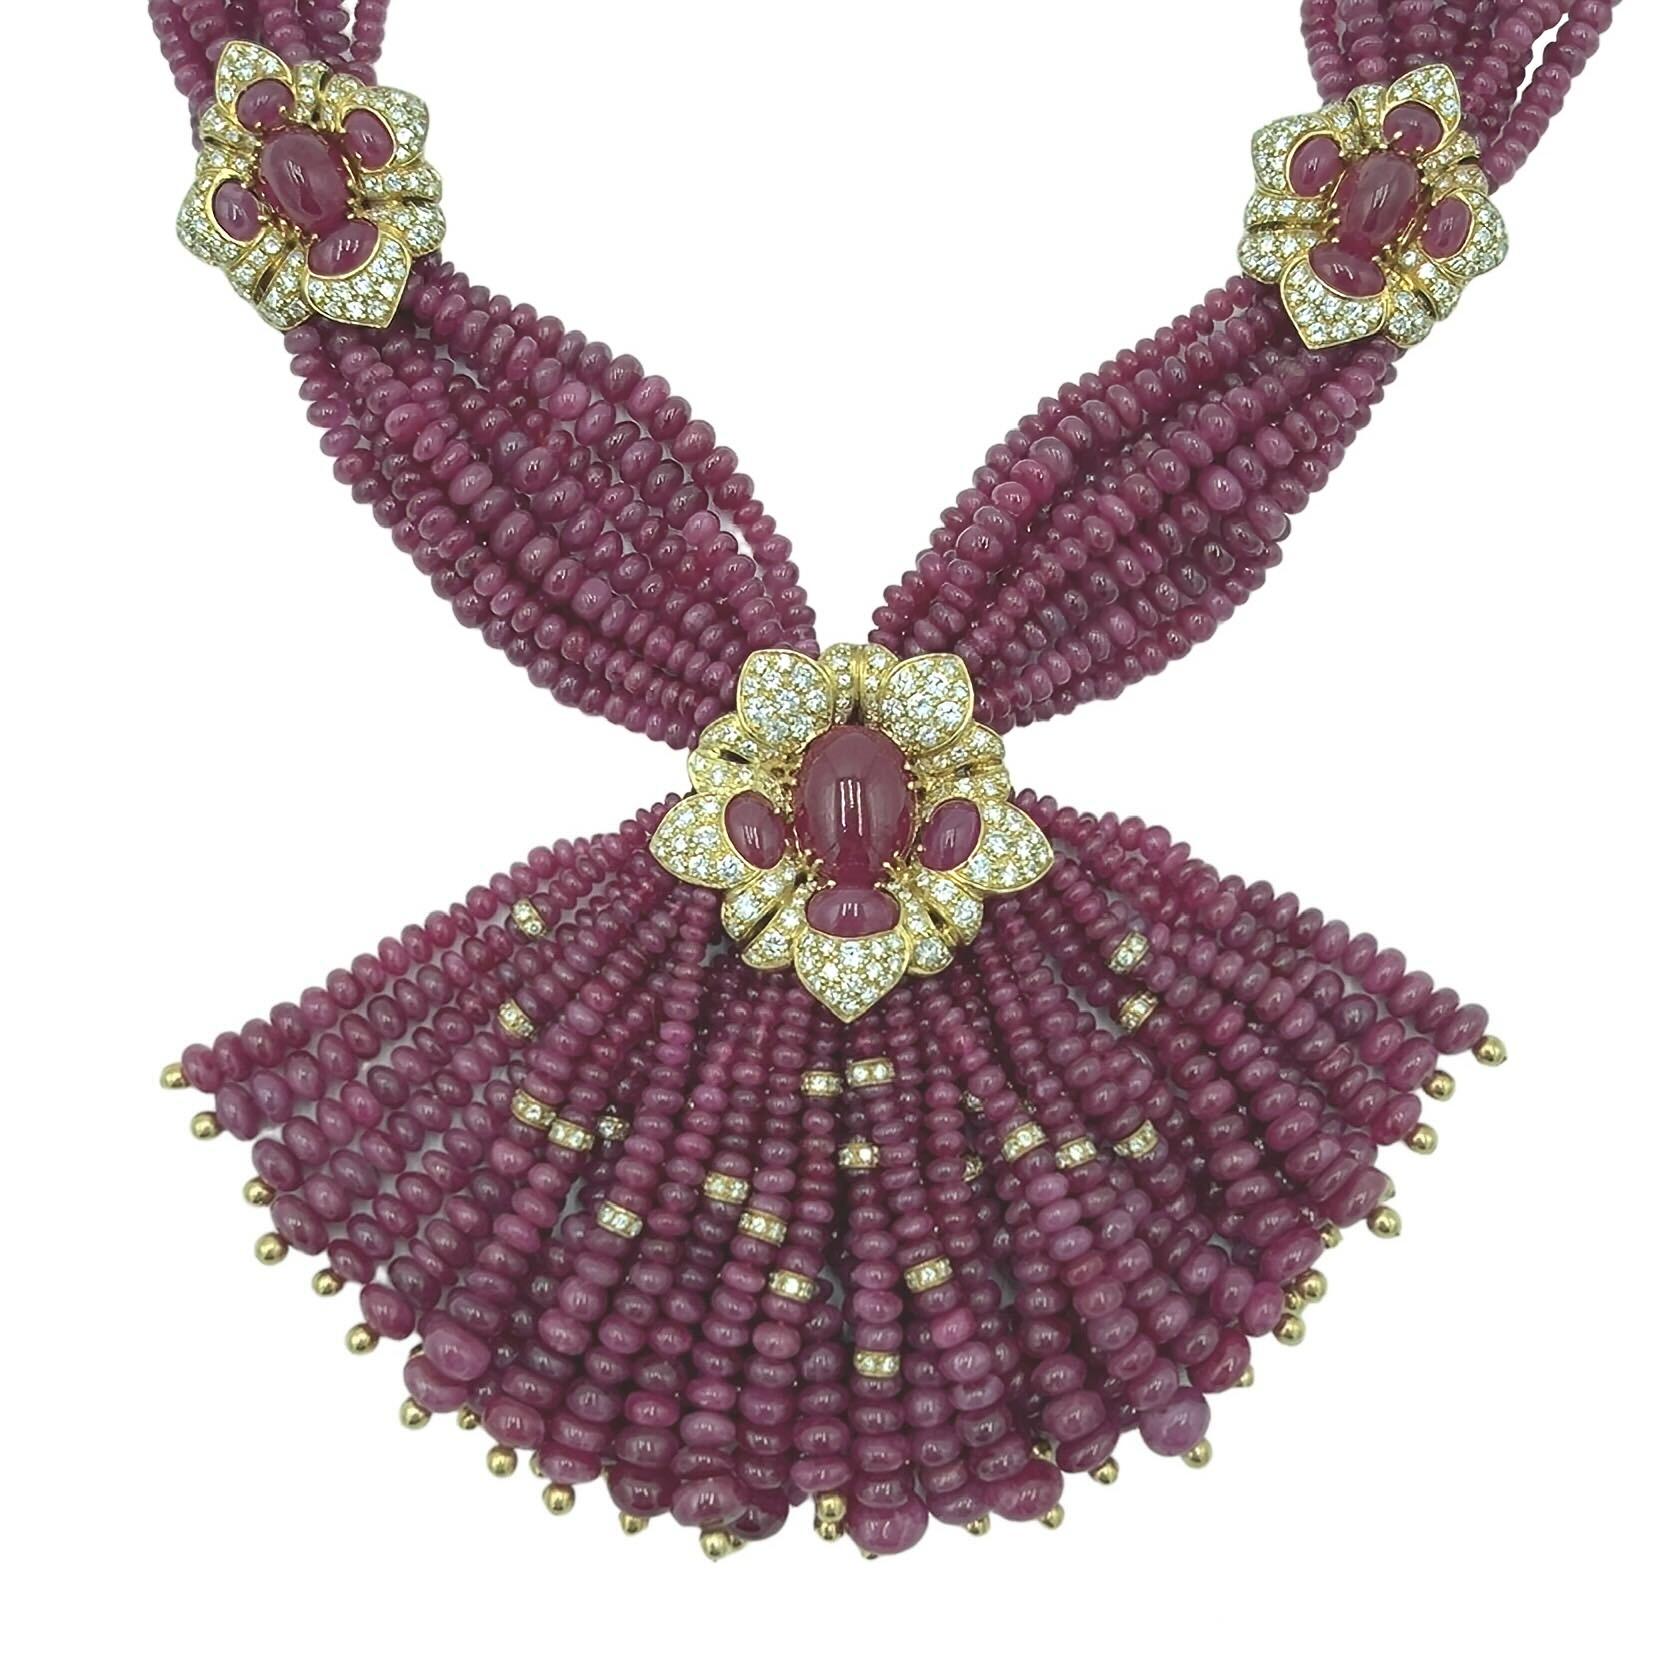 Halskette aus 18 Karat Gelbgold, Rubin und Diamanten, Giovane, Italien, um 1990.  Zehn Stränge aus abgestuften Rubinperlen, die von zwei floralen Motiven zusammengehalten werden, in deren Mitte sich jeweils ein ovaler Rubin-Cabochon befindet und die